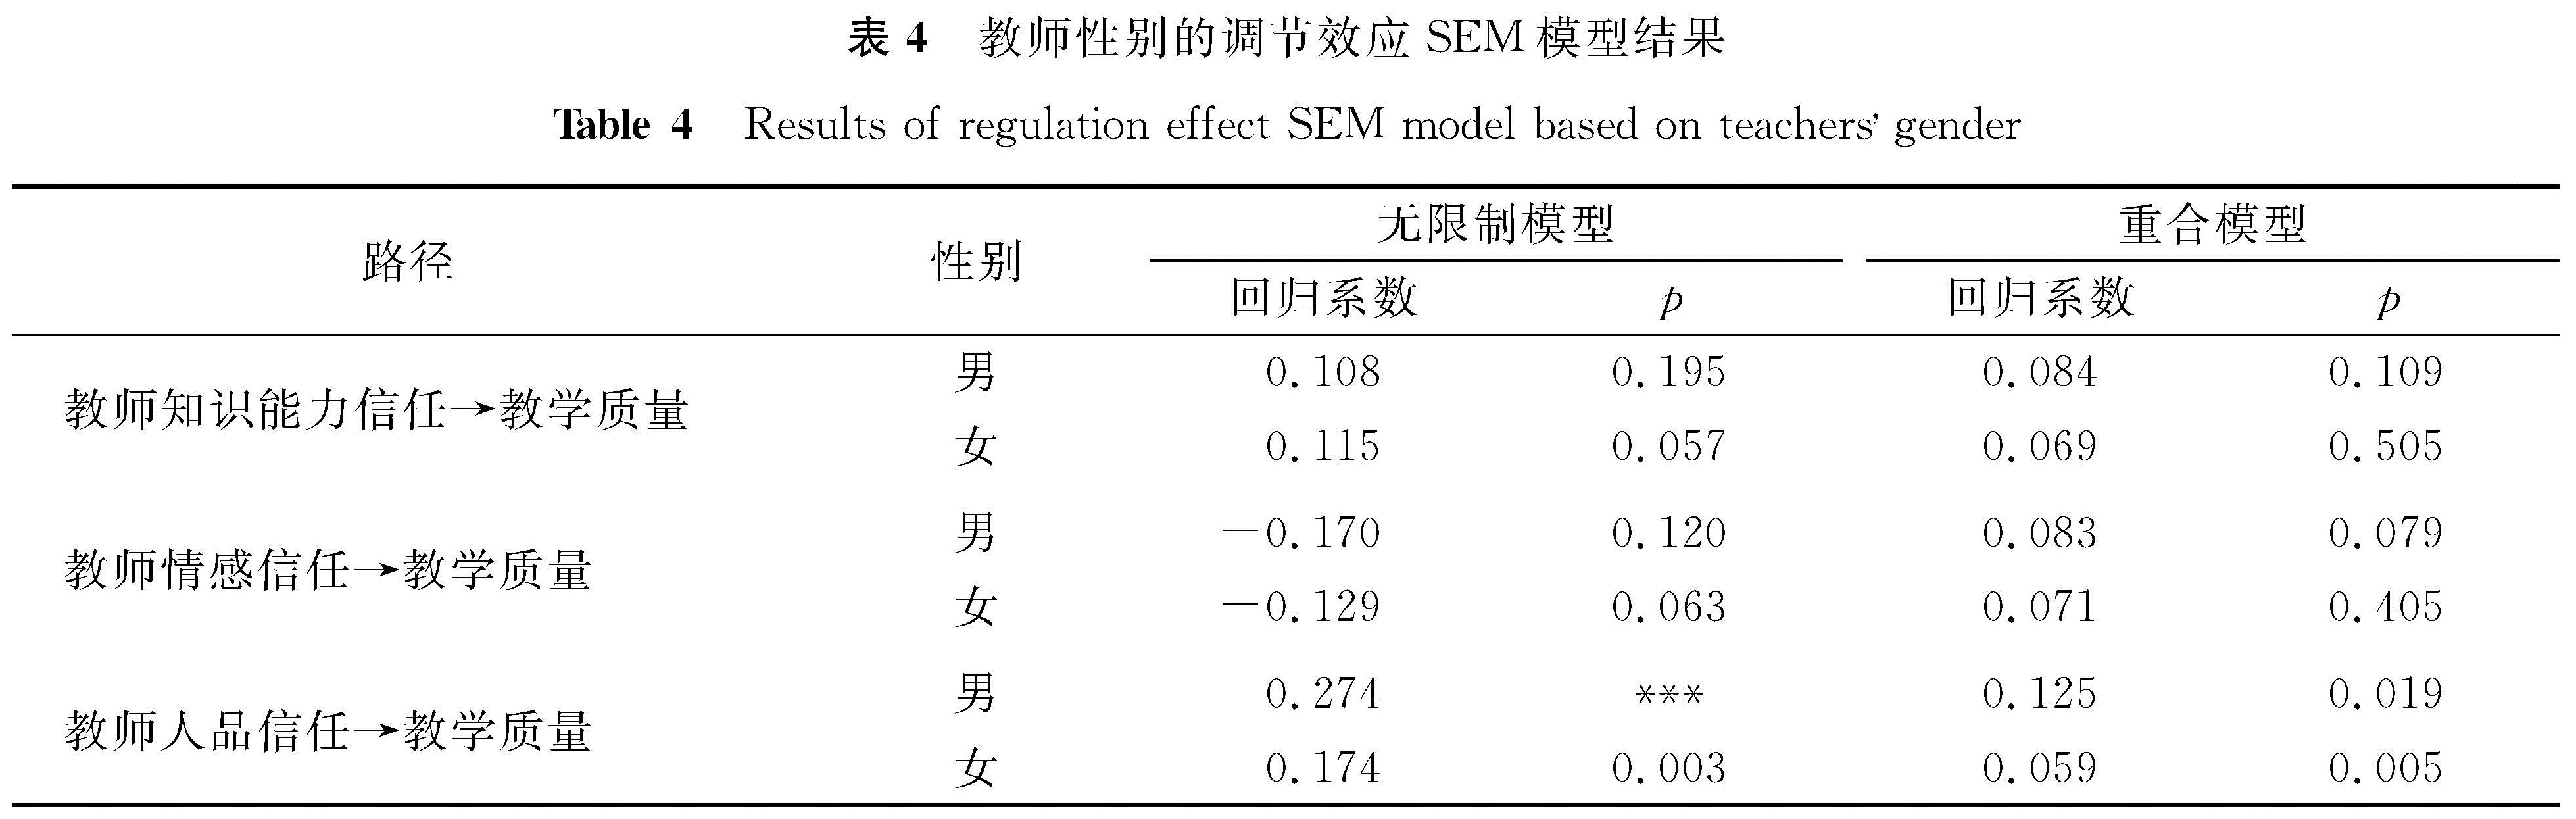 表4 教师性别的调节效应SEM模型结果<br/>Table 4 Results of regulation effect SEM model based on teachers gender